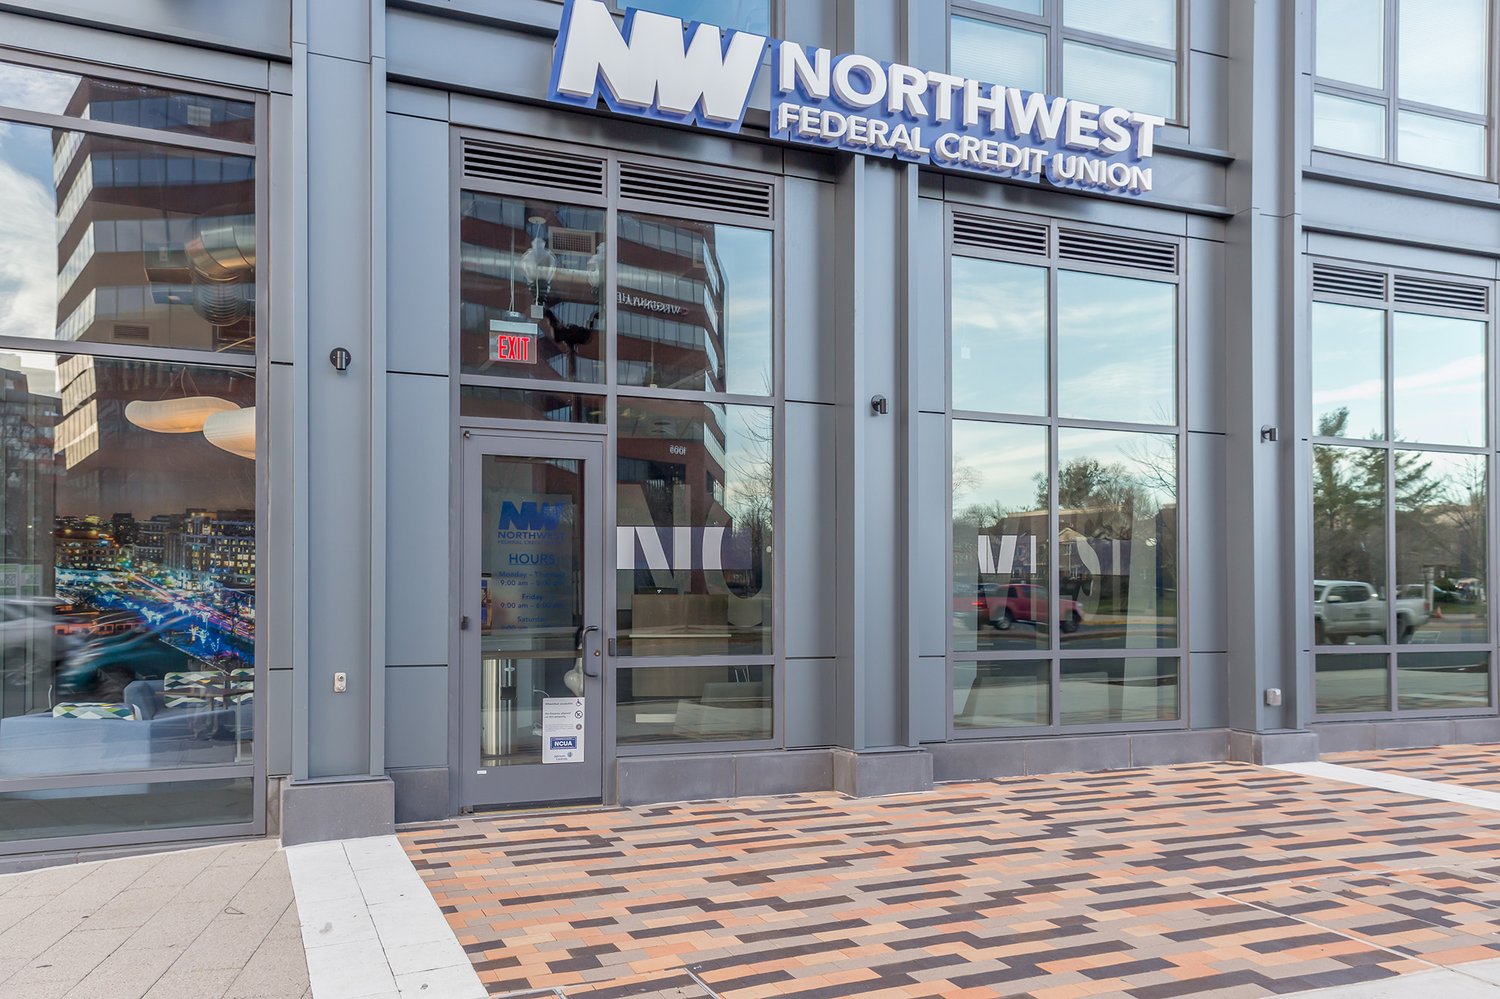 Northwest Credit Union exterior